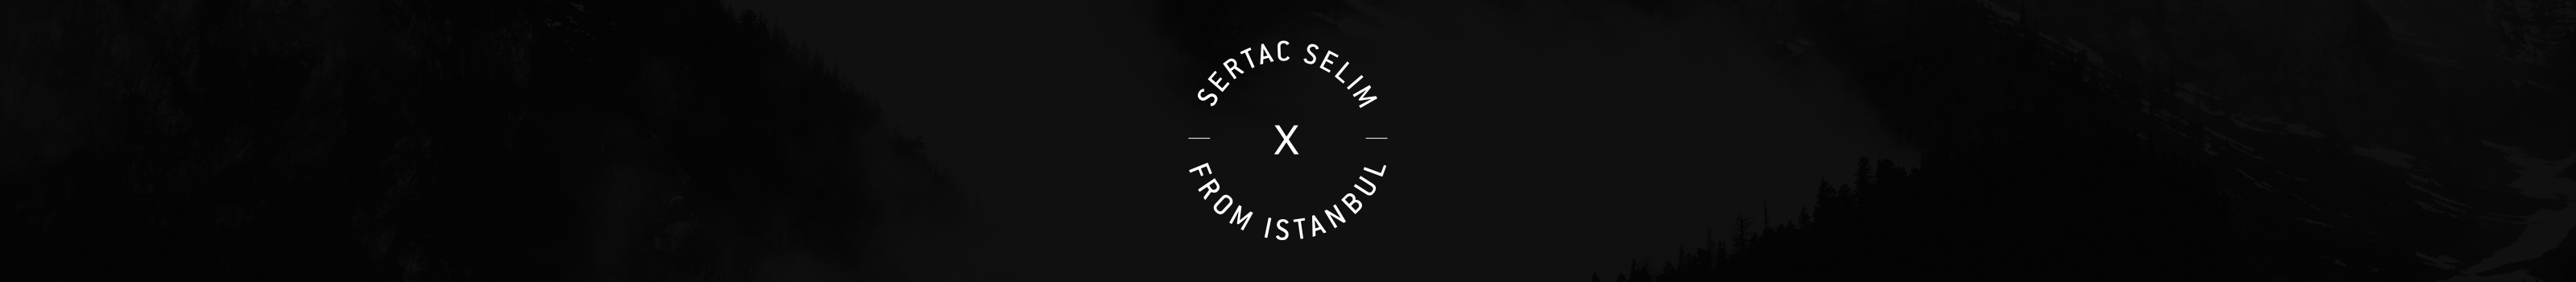 Sertaç Selim Karakullukçu's profile banner